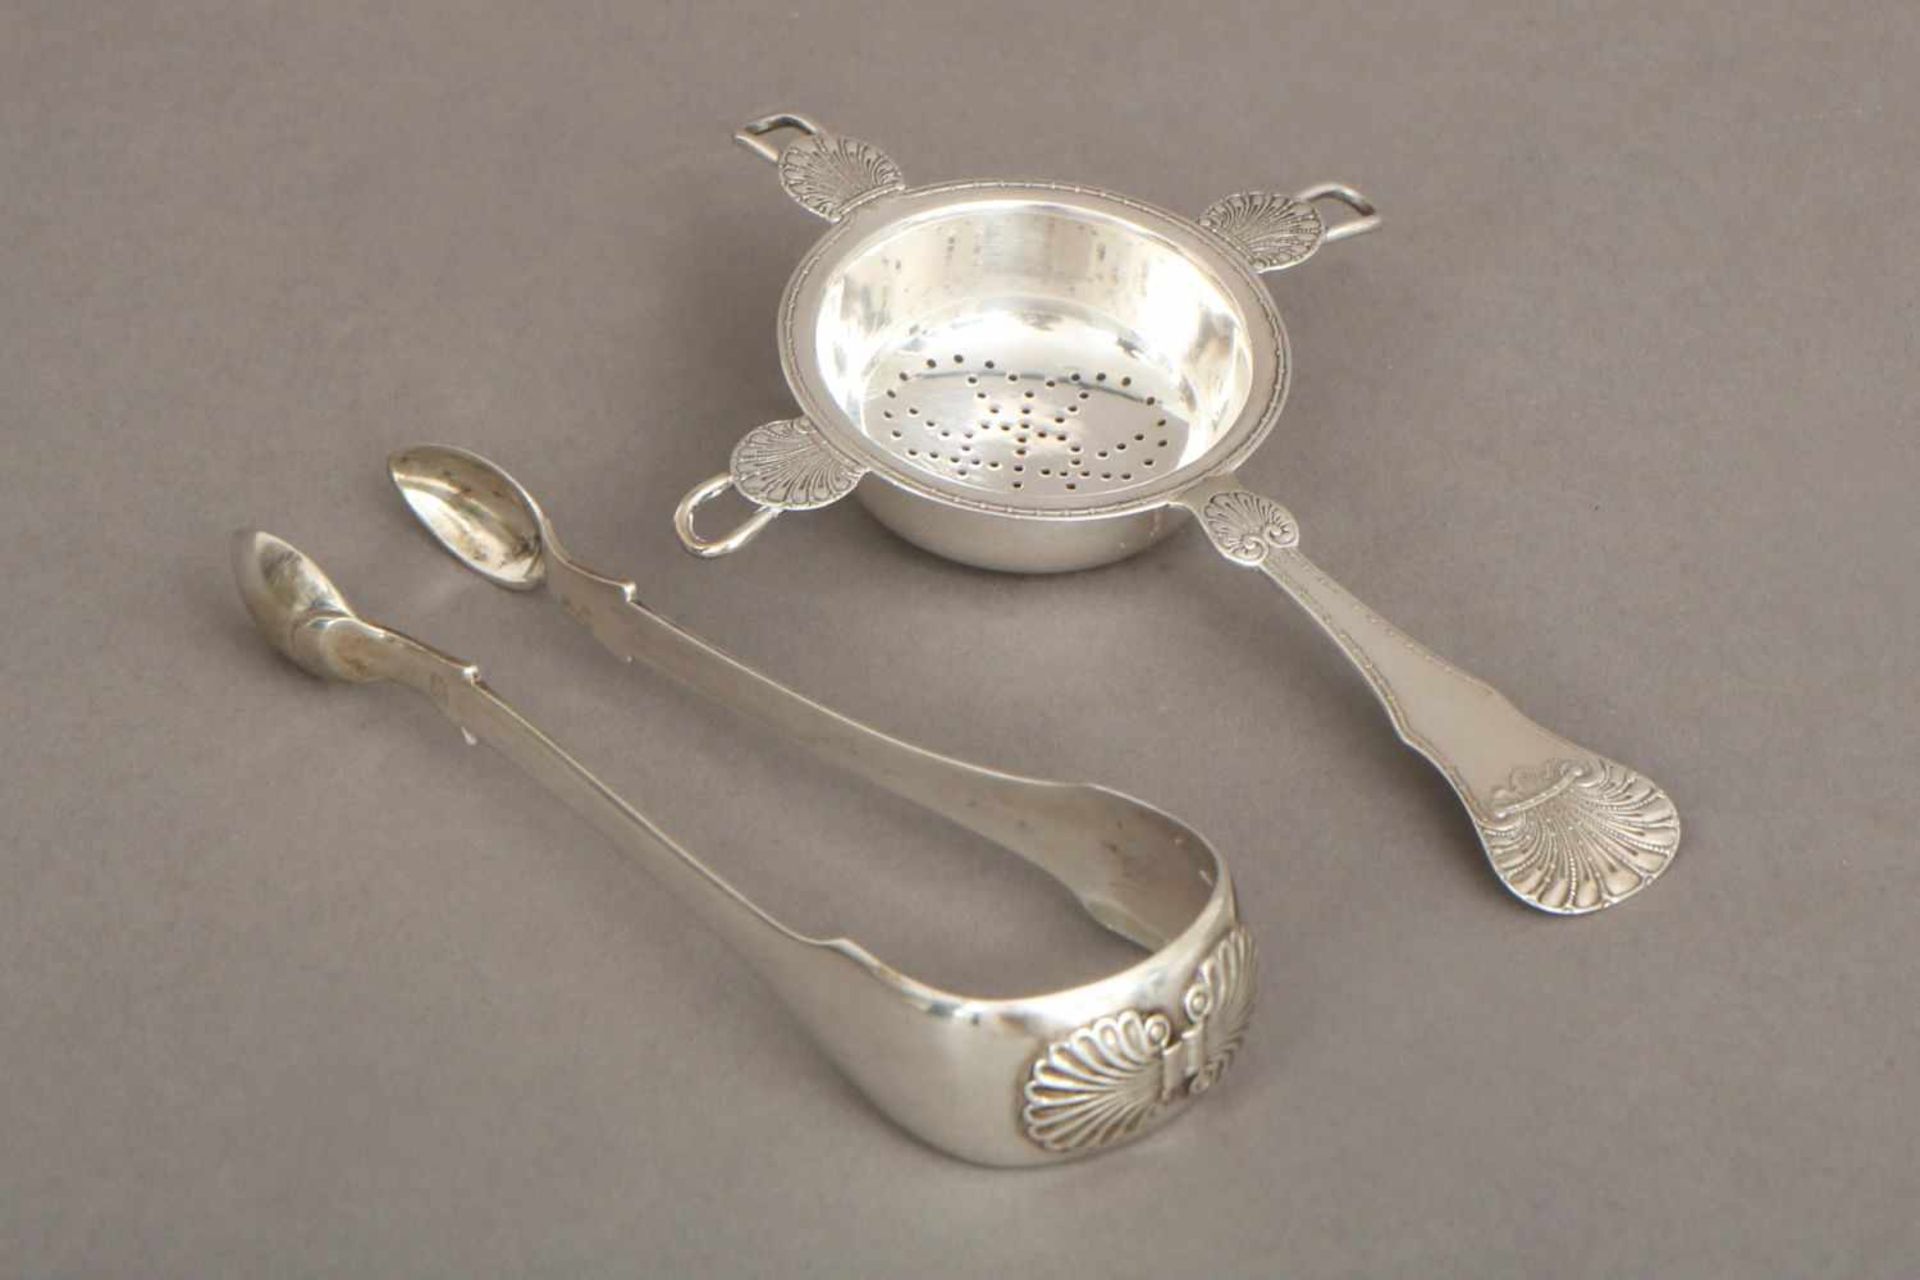 2 Teile ¨Empire¨ Tafelsilber1 Zuckerzange (Hamburger Silber, frühes 19. Jahrhundert) und 1